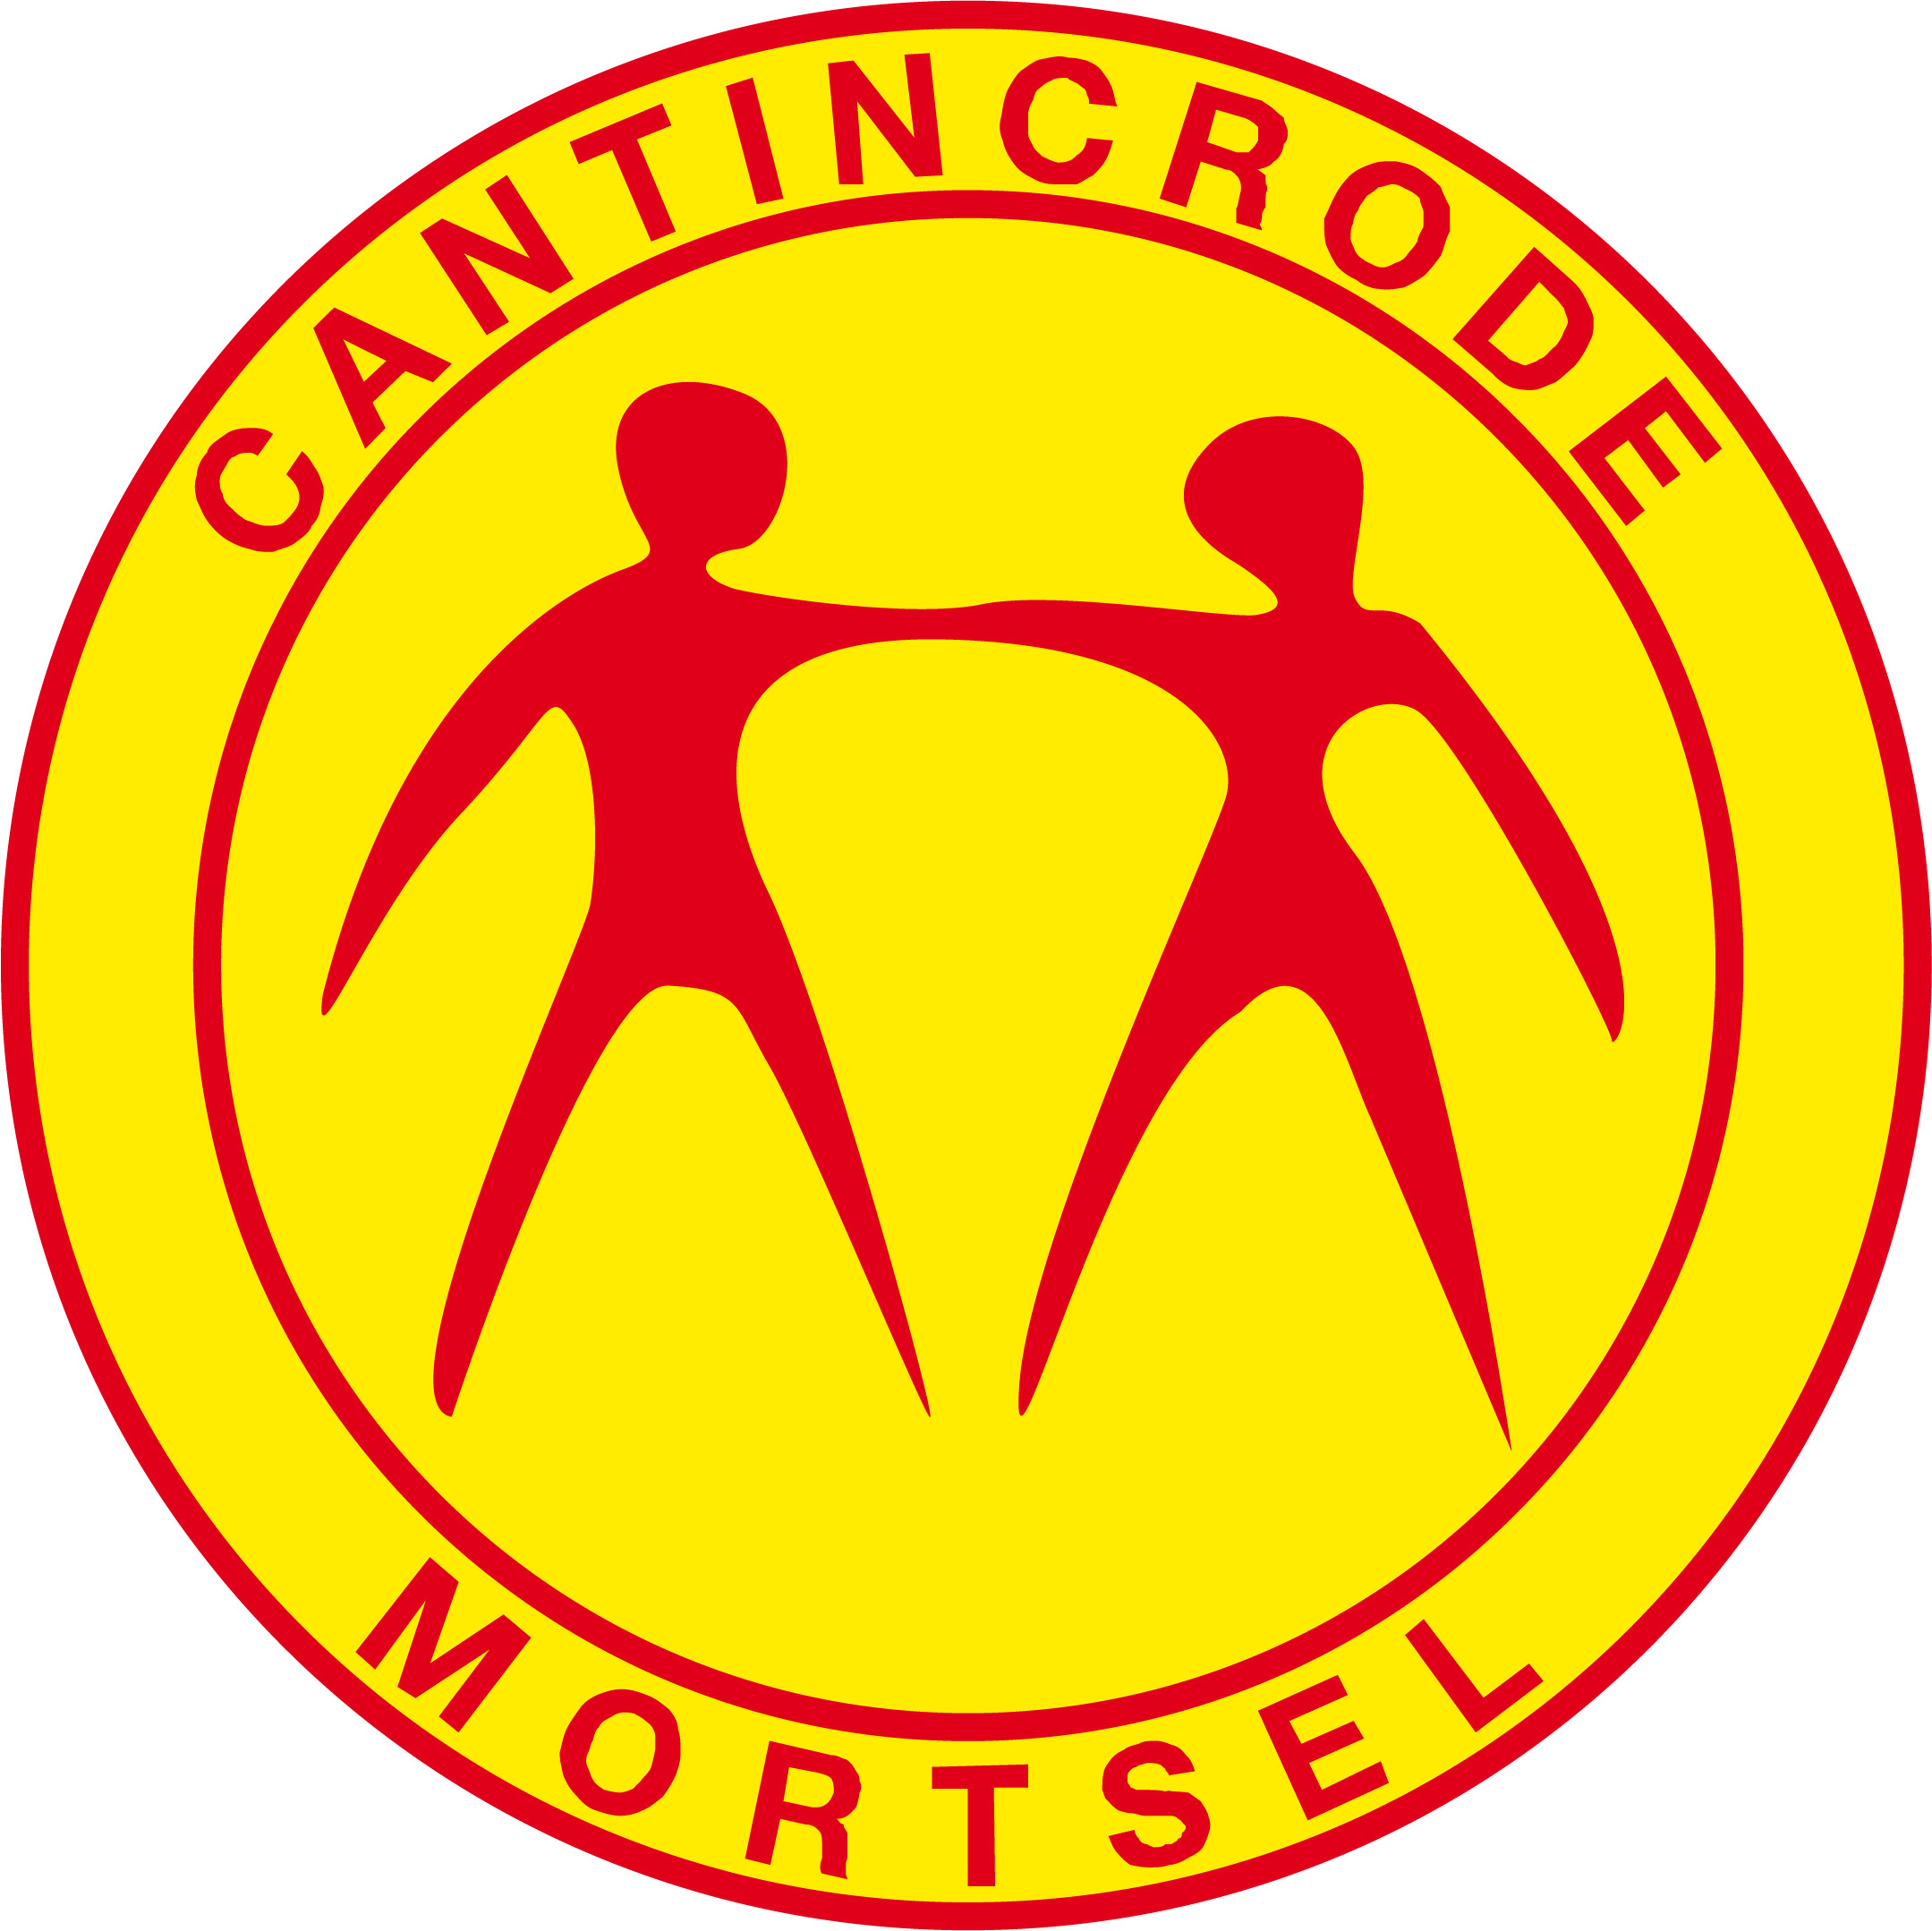 Cantincrode Logo